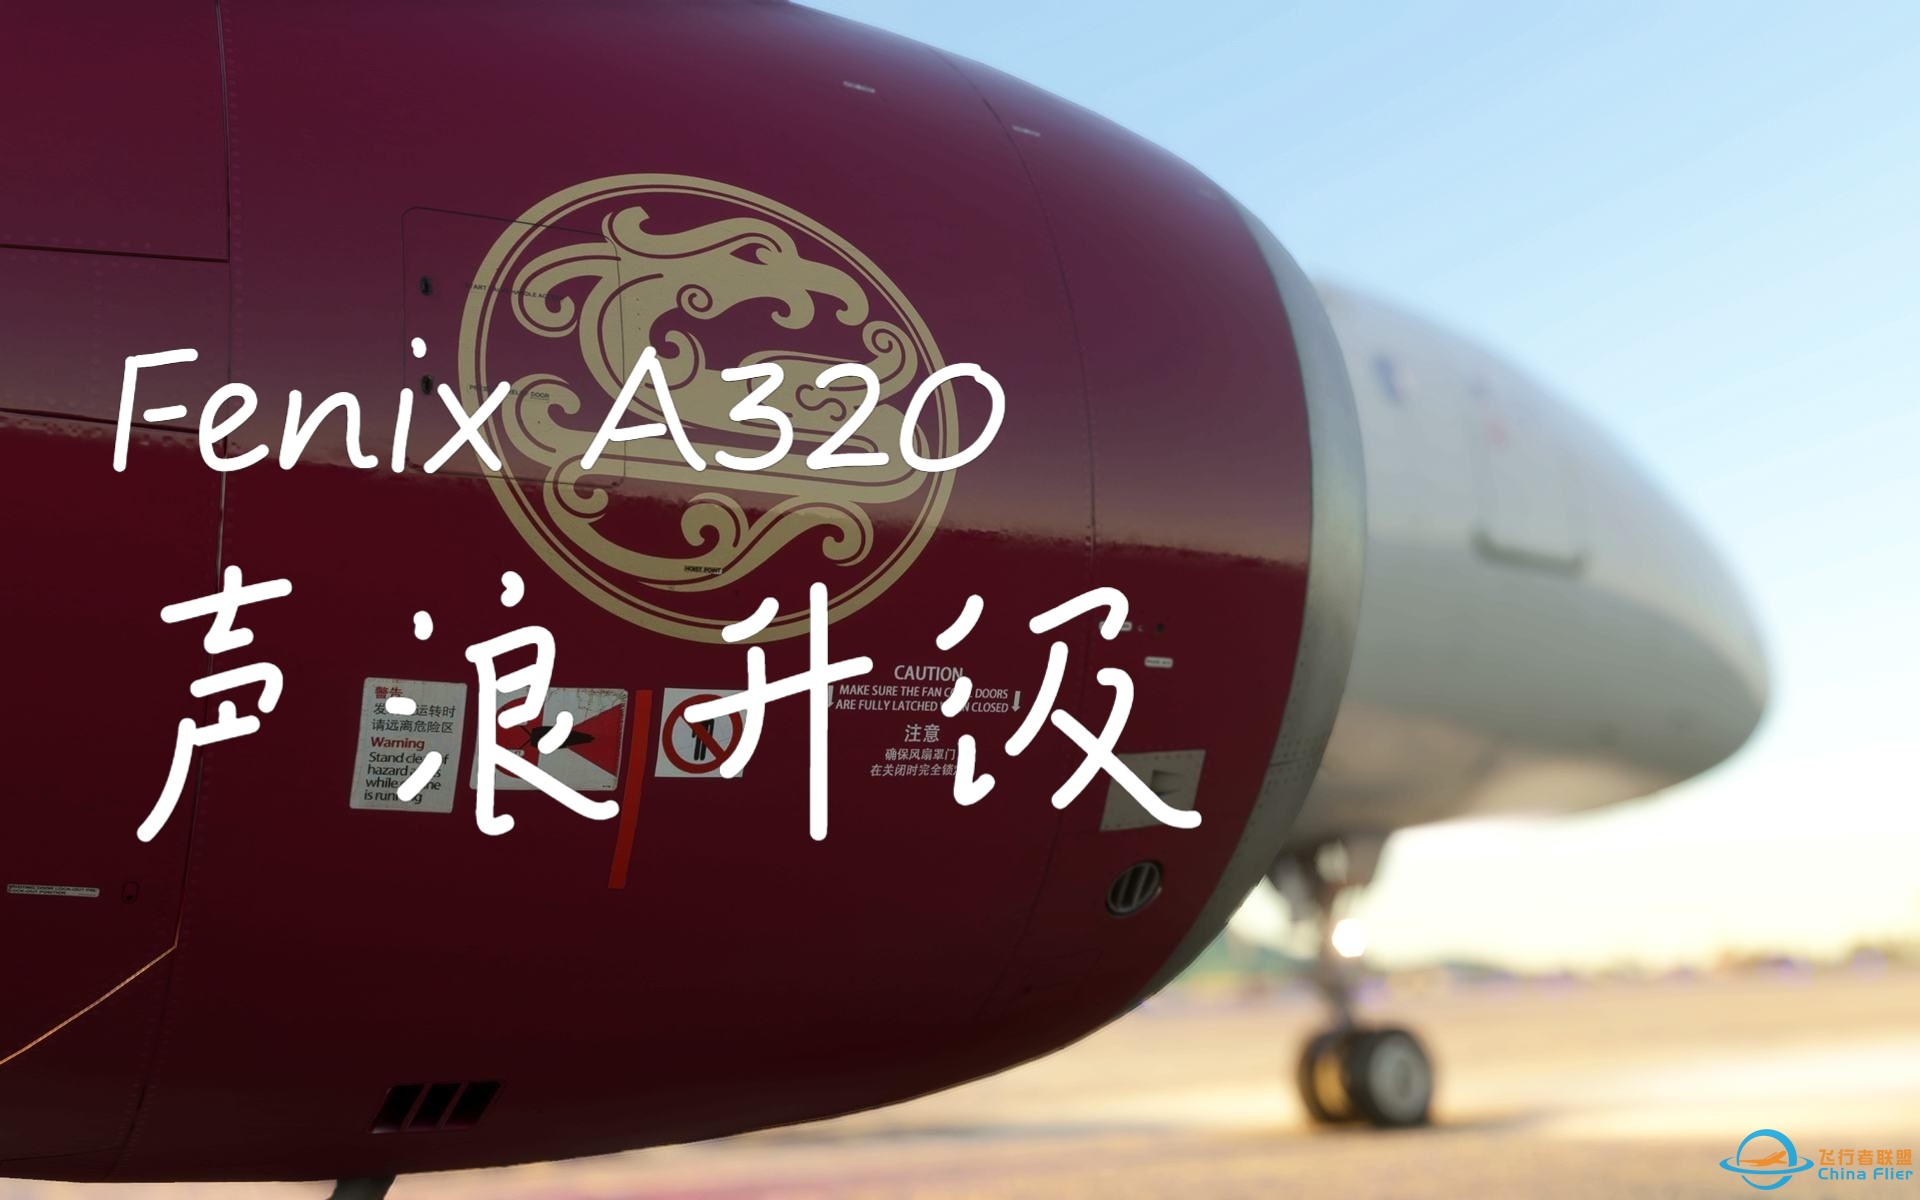 【模拟飞行2020】更新Fenix A320 CFM56 声音包，沉浸式试车-3092 